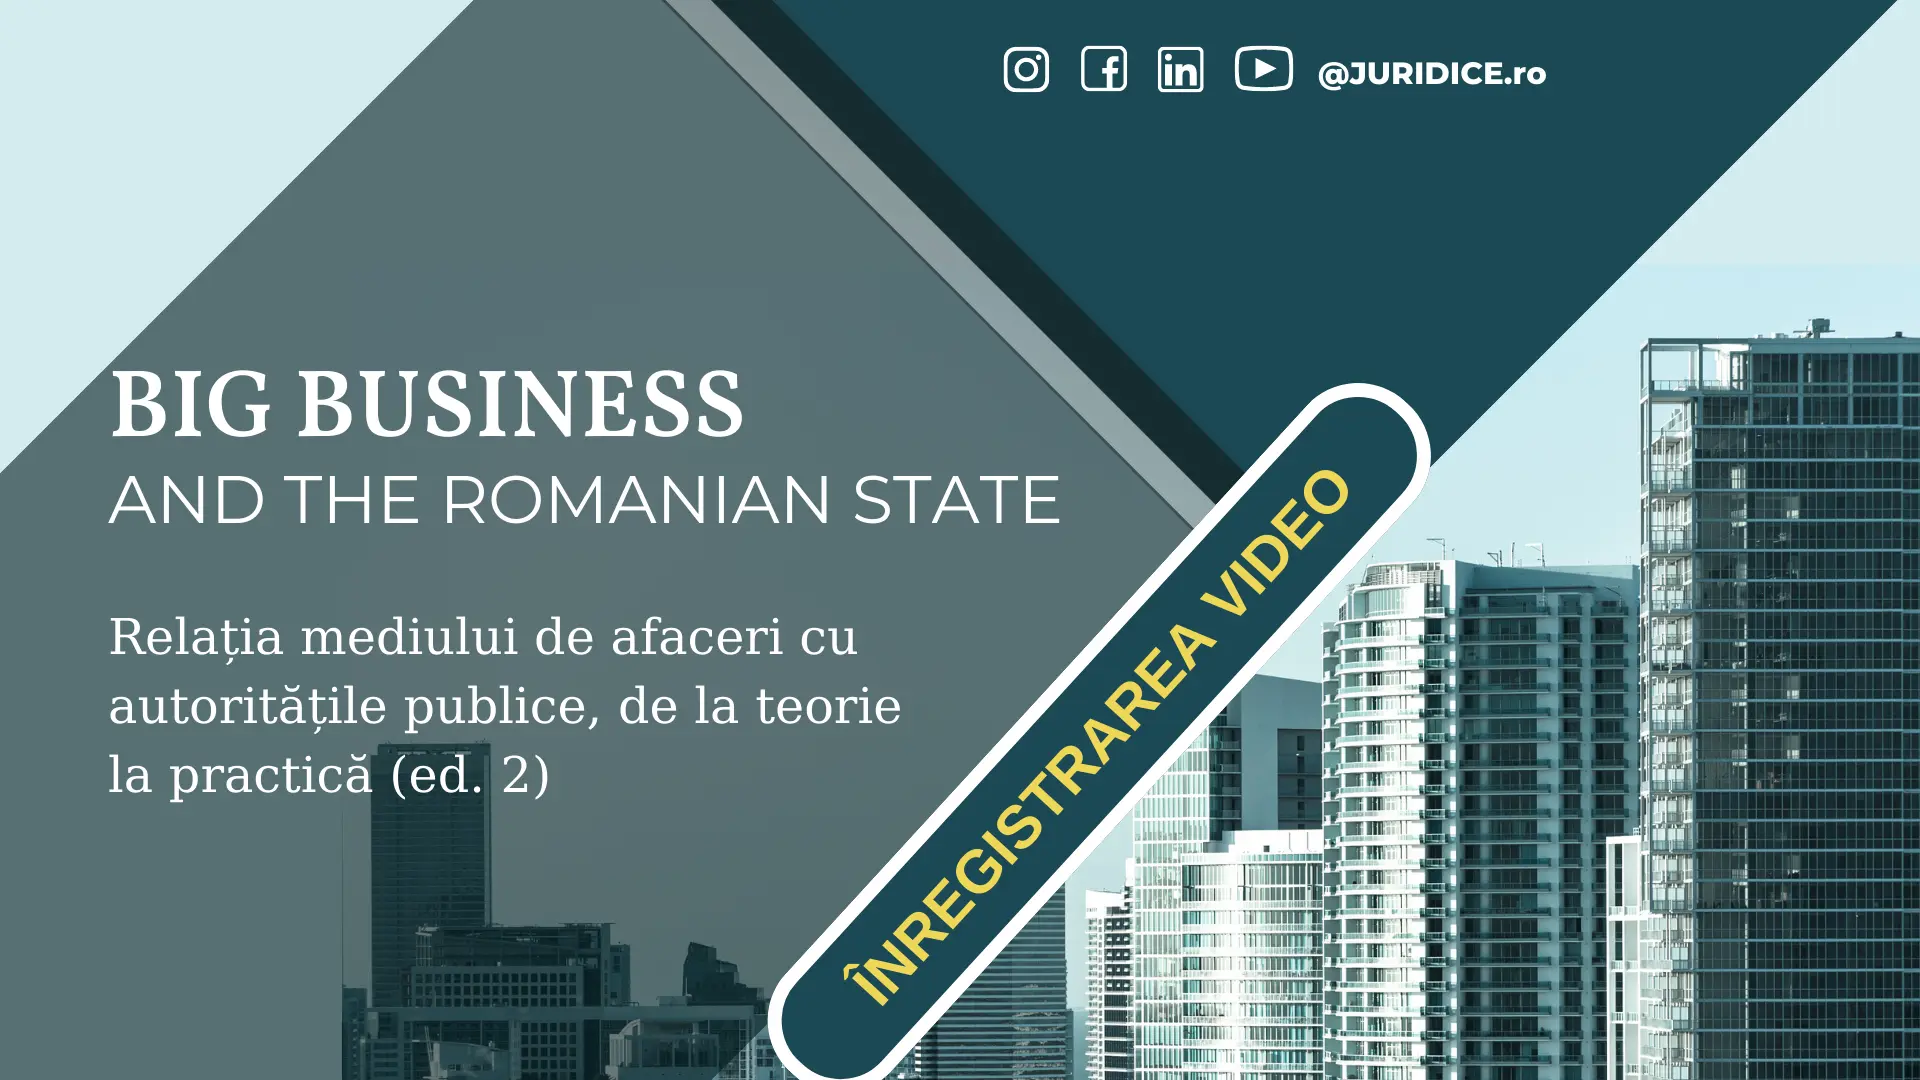 Big Business and the Romanian State (Relația mediului de afaceri cu autoritățile publice, de la teorie la practică). Ed. 2 / 3 noiembrie 2022, Online